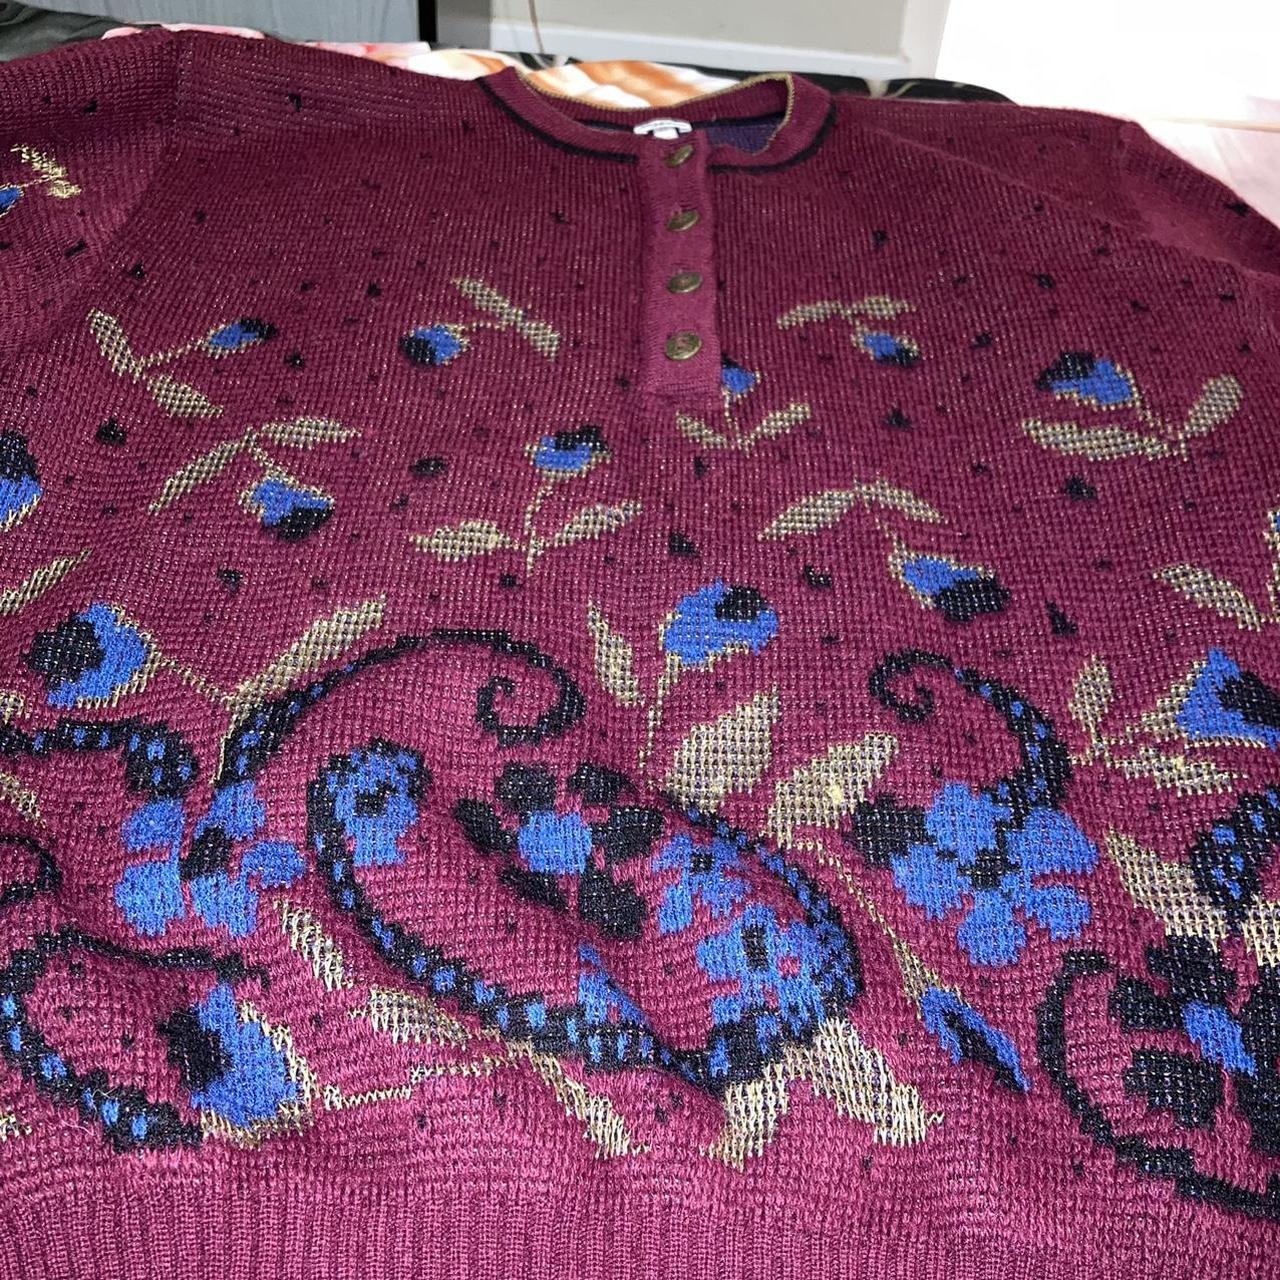 Ladies vintage knitted jumper with really juicy... - Depop